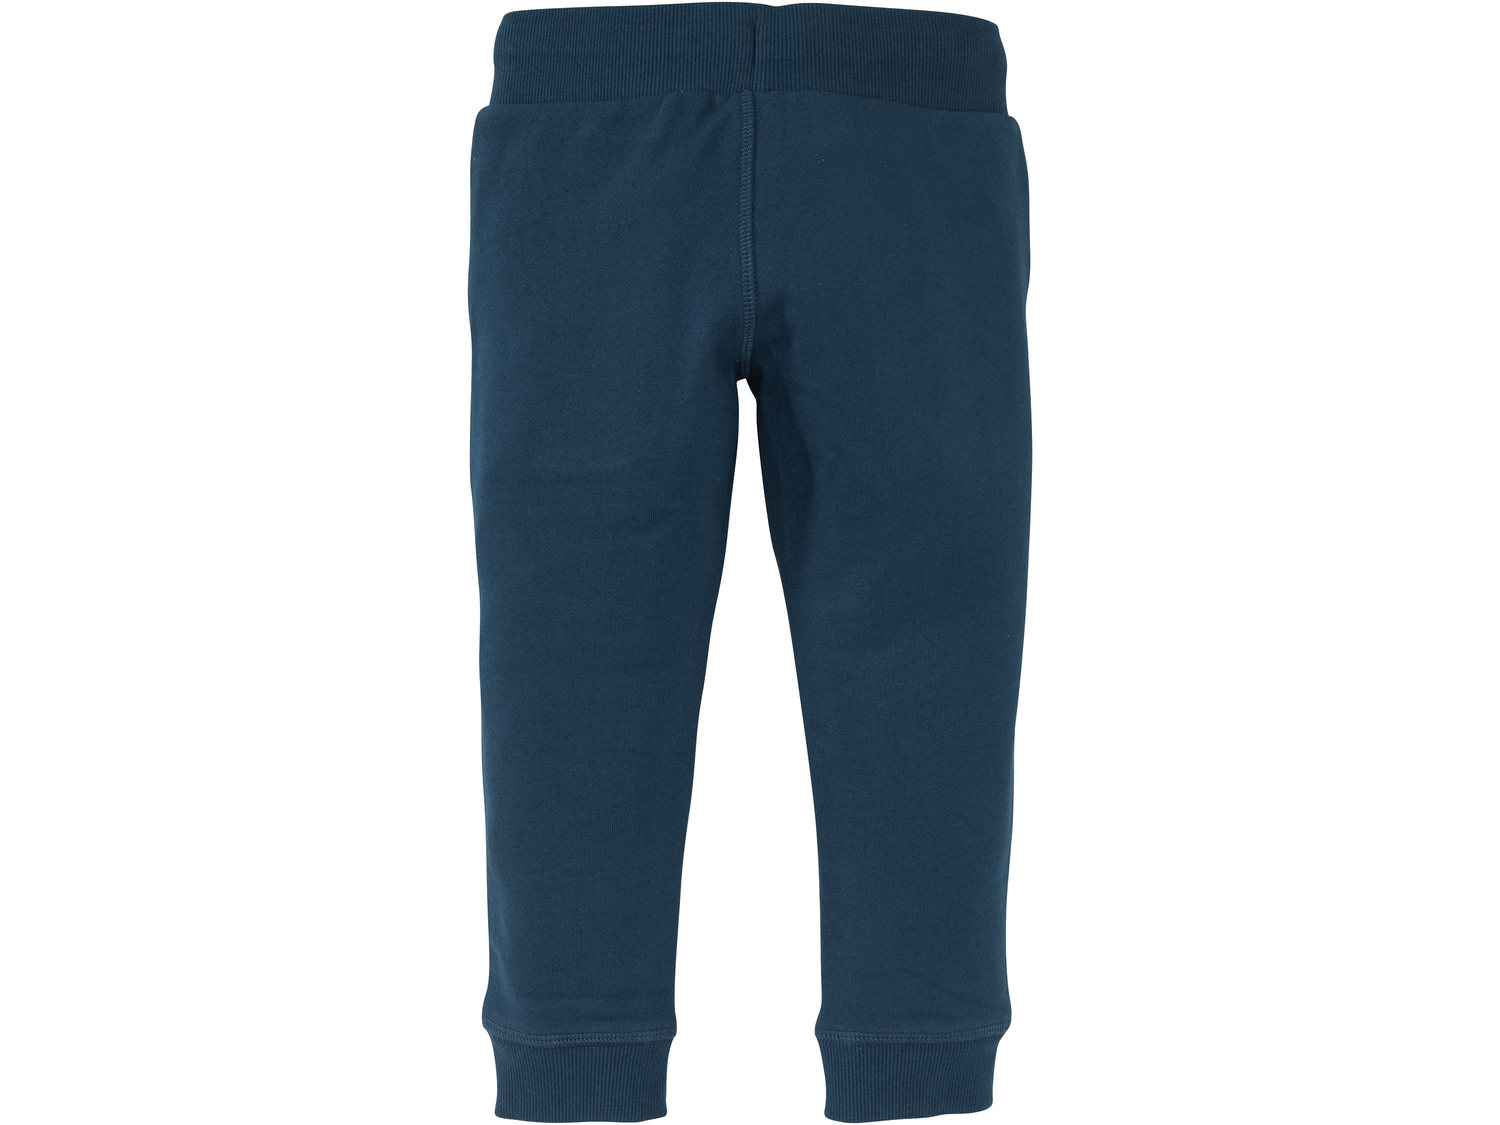 Spodnie dresowe Pepperts, cena 17,99 PLN 
- wysoka zawartość bawełny
- elastyczny ...